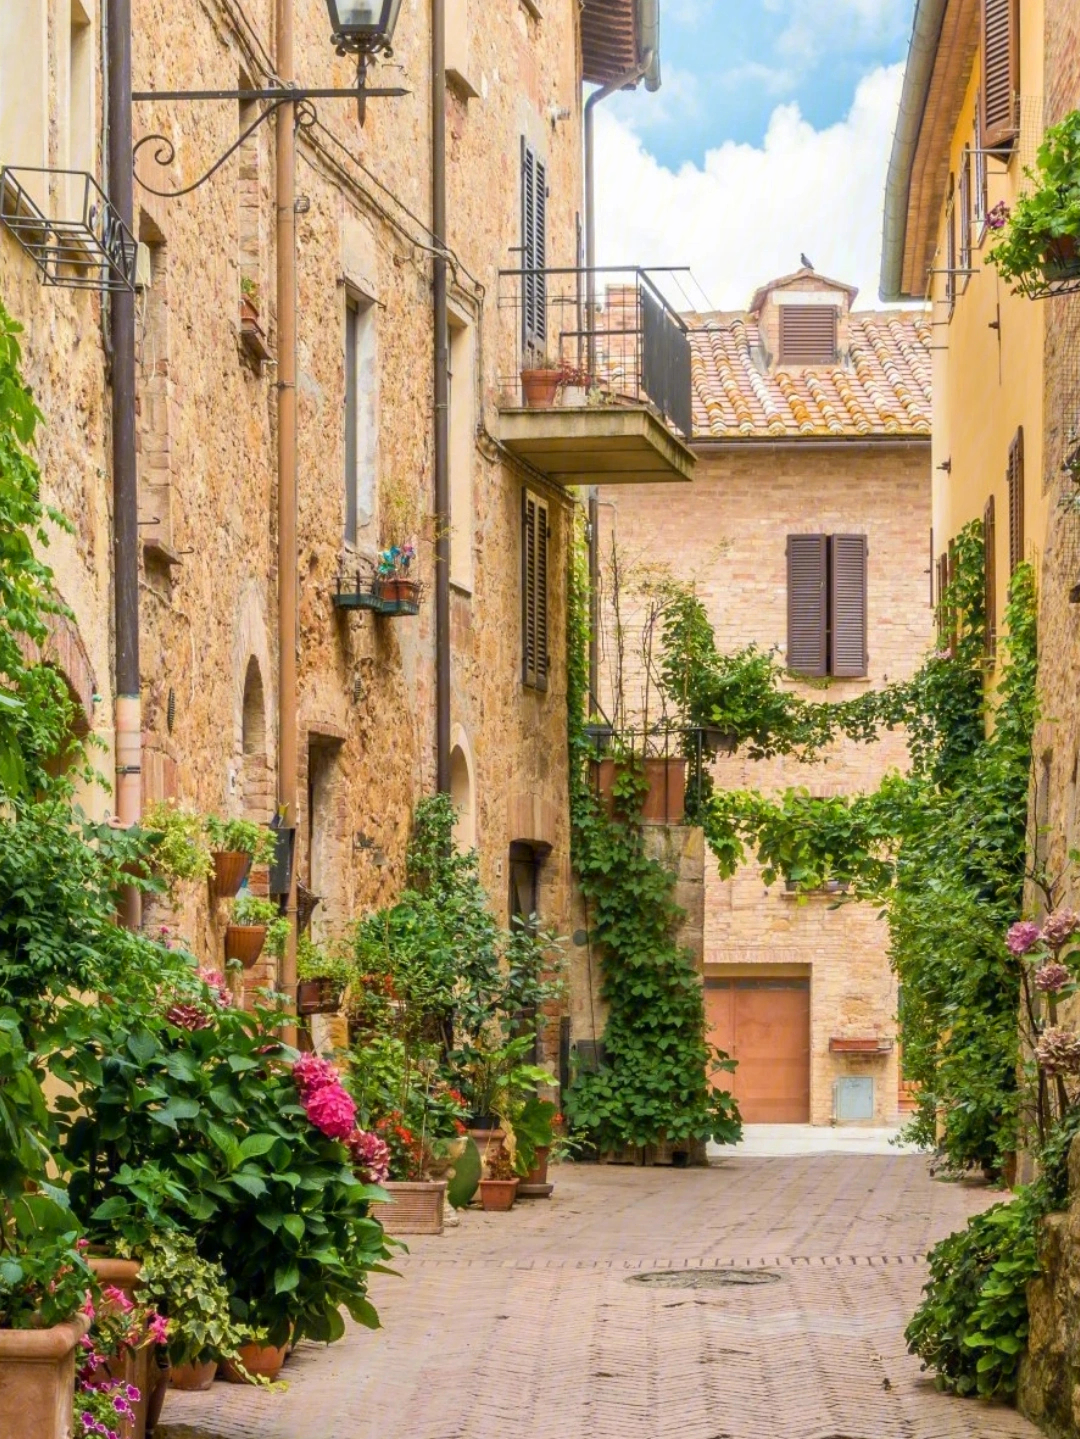 意大利最美的9个小镇图片